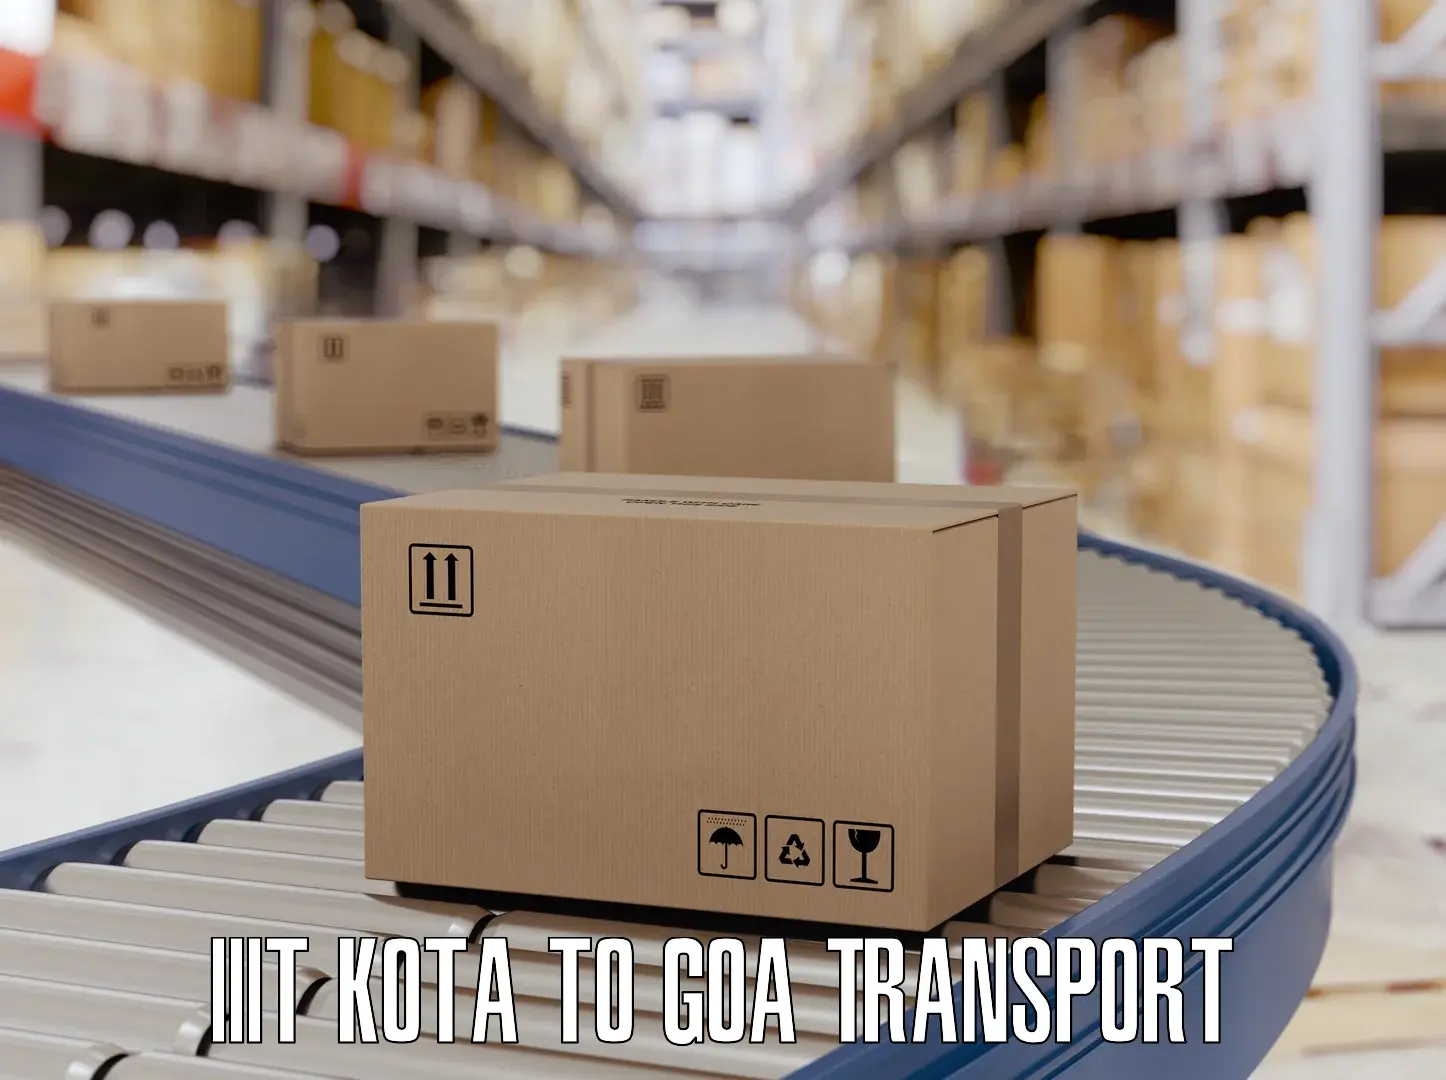 Online transport booking IIIT Kota to IIT Goa